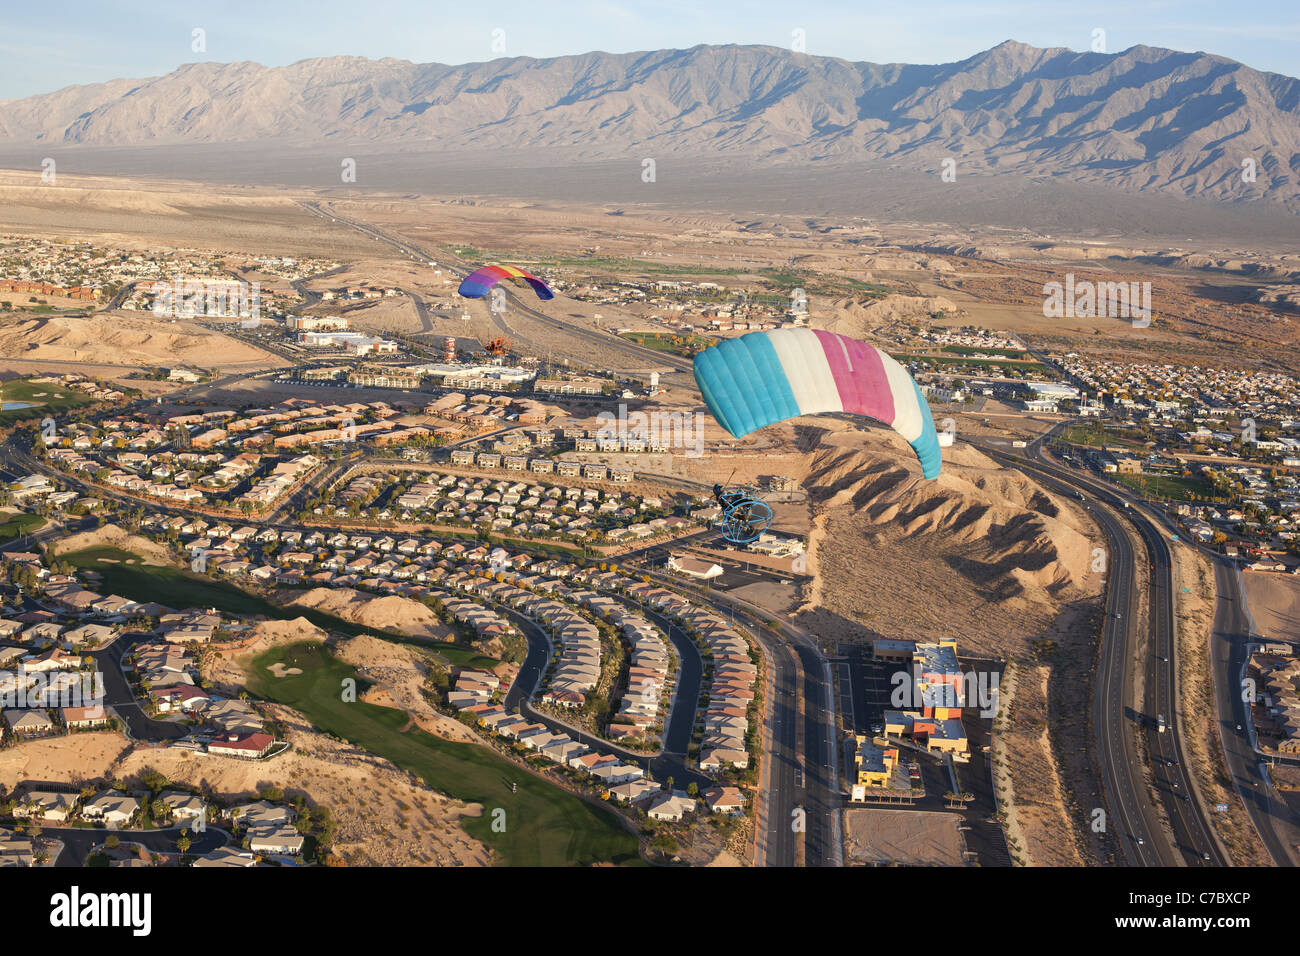 VUE AÉRIENNE.Deux parachutes motorisés survolant la ville désertique de Mesquite.Désert de Mojave, comté de Clark, Nevada, États-Unis. Banque D'Images